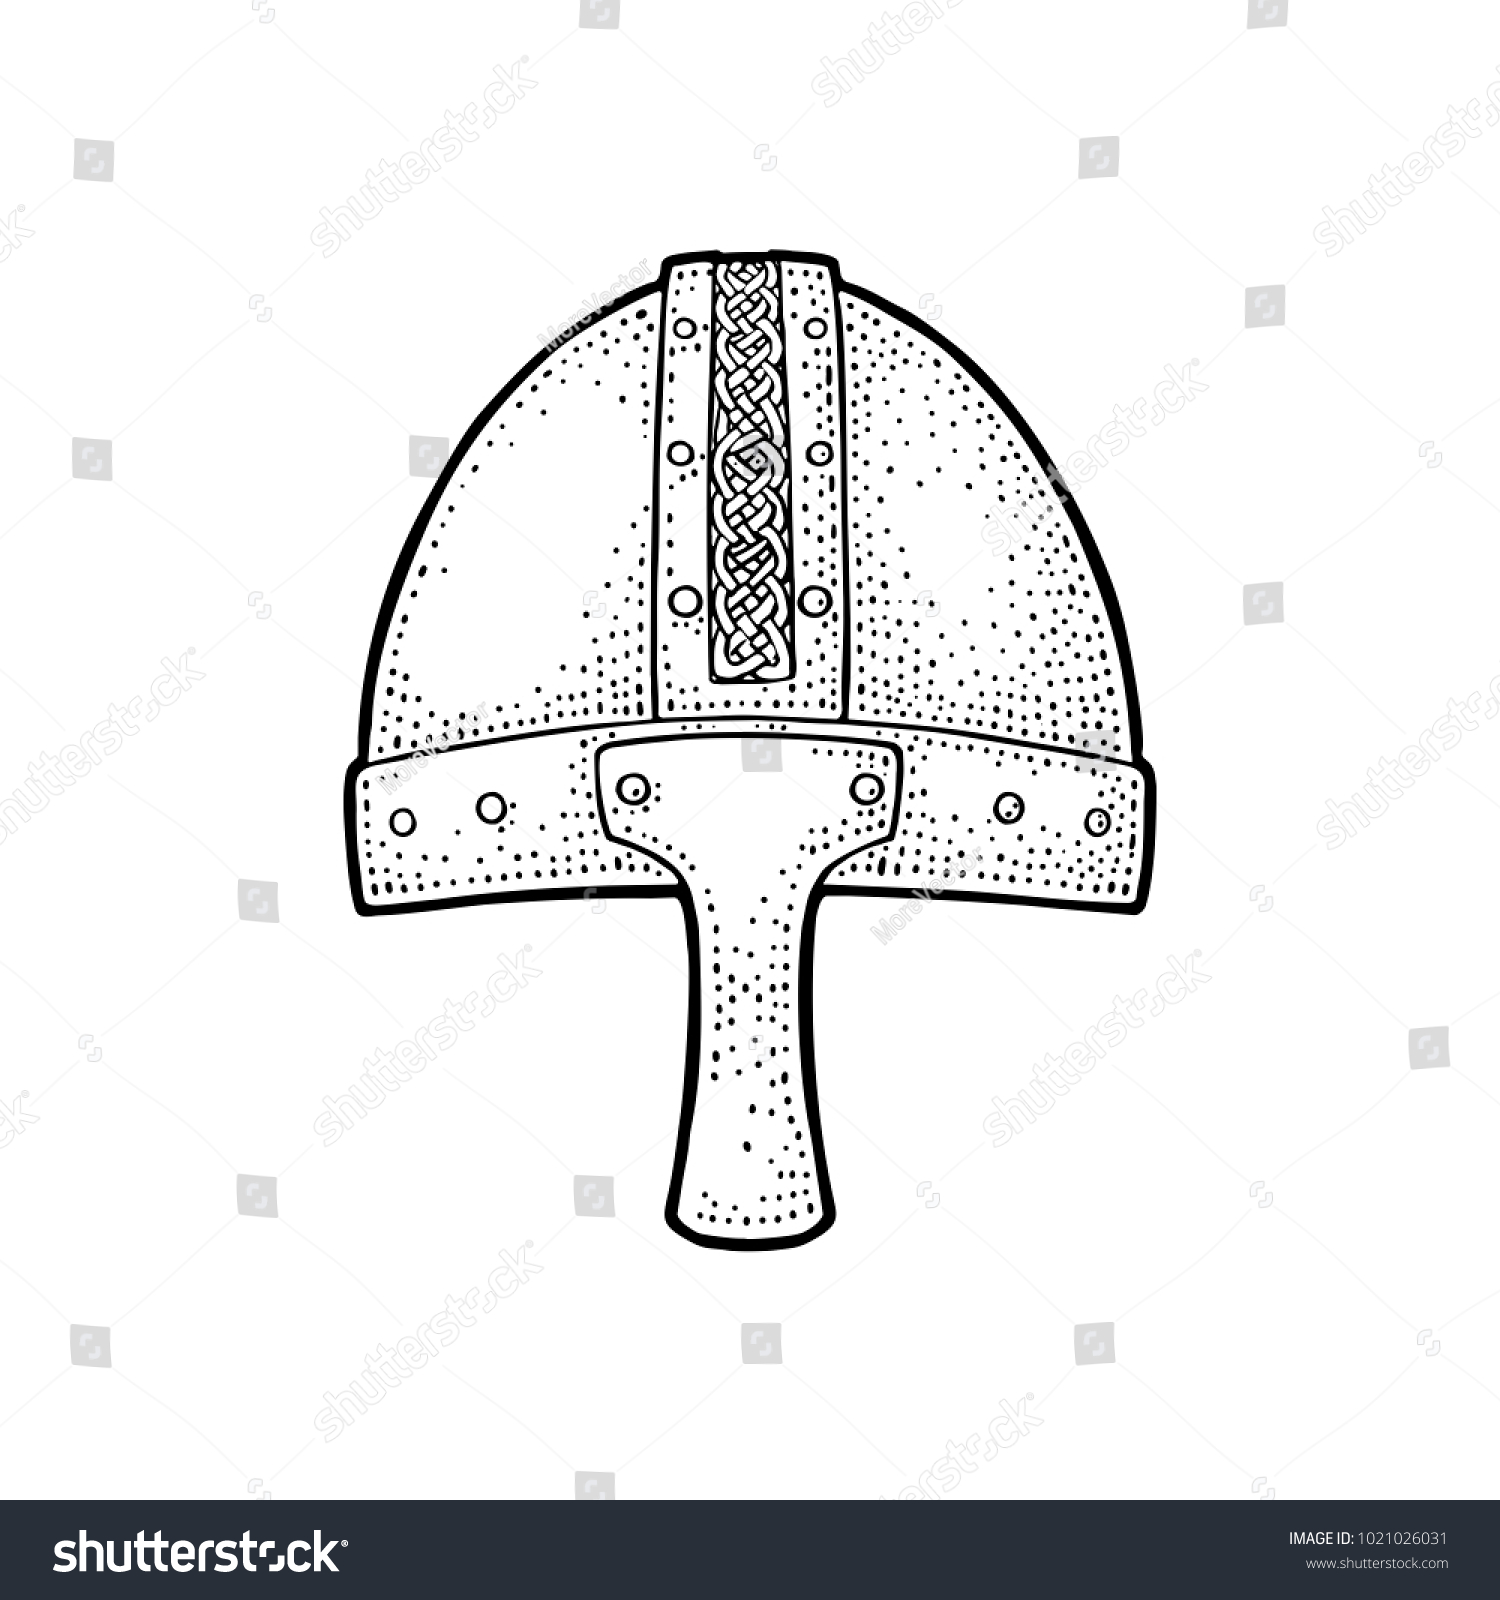 Богатырский шлем